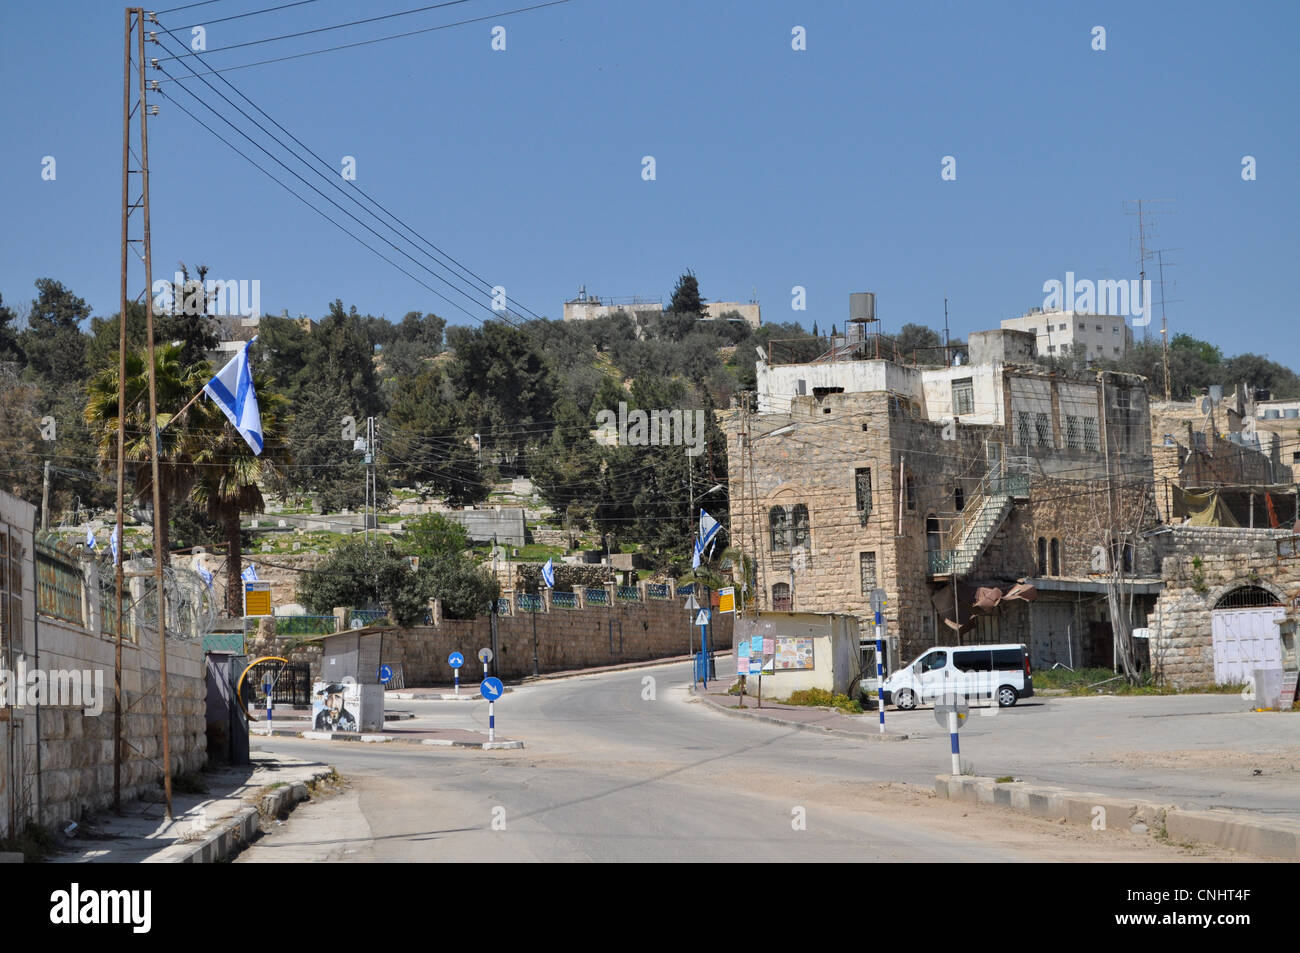 La città palestinese di Hebron sotto occupazione israeliana, Al Shuhhada street, il Souk, la moschea di Ibrahim, scuola trimestre militarizzata Foto Stock